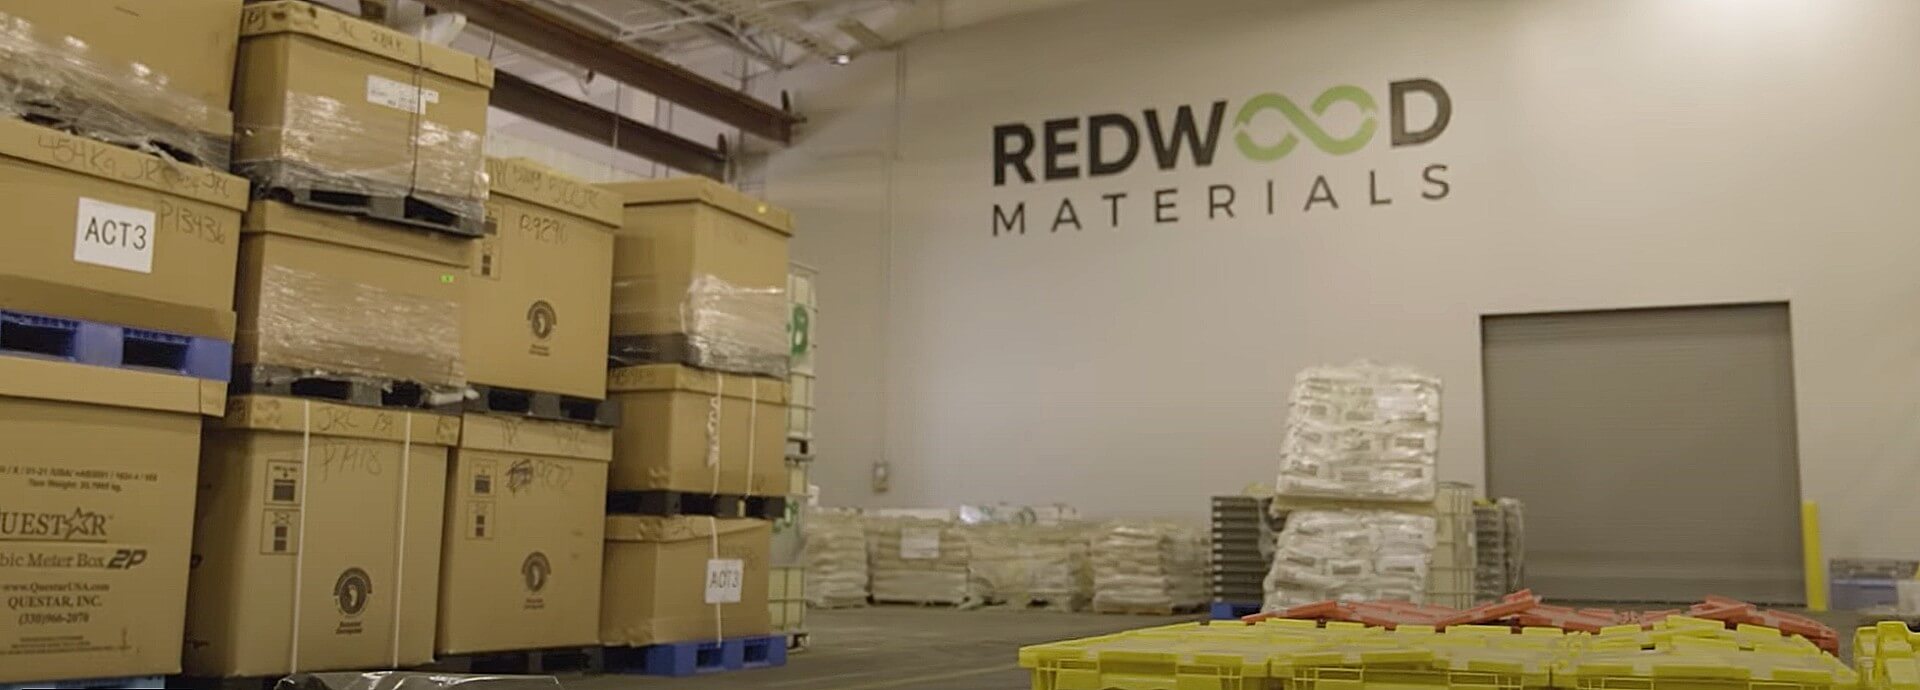 Redwood Materials approuvé pour plus de 100 millions de dollars d’incitations fiscales